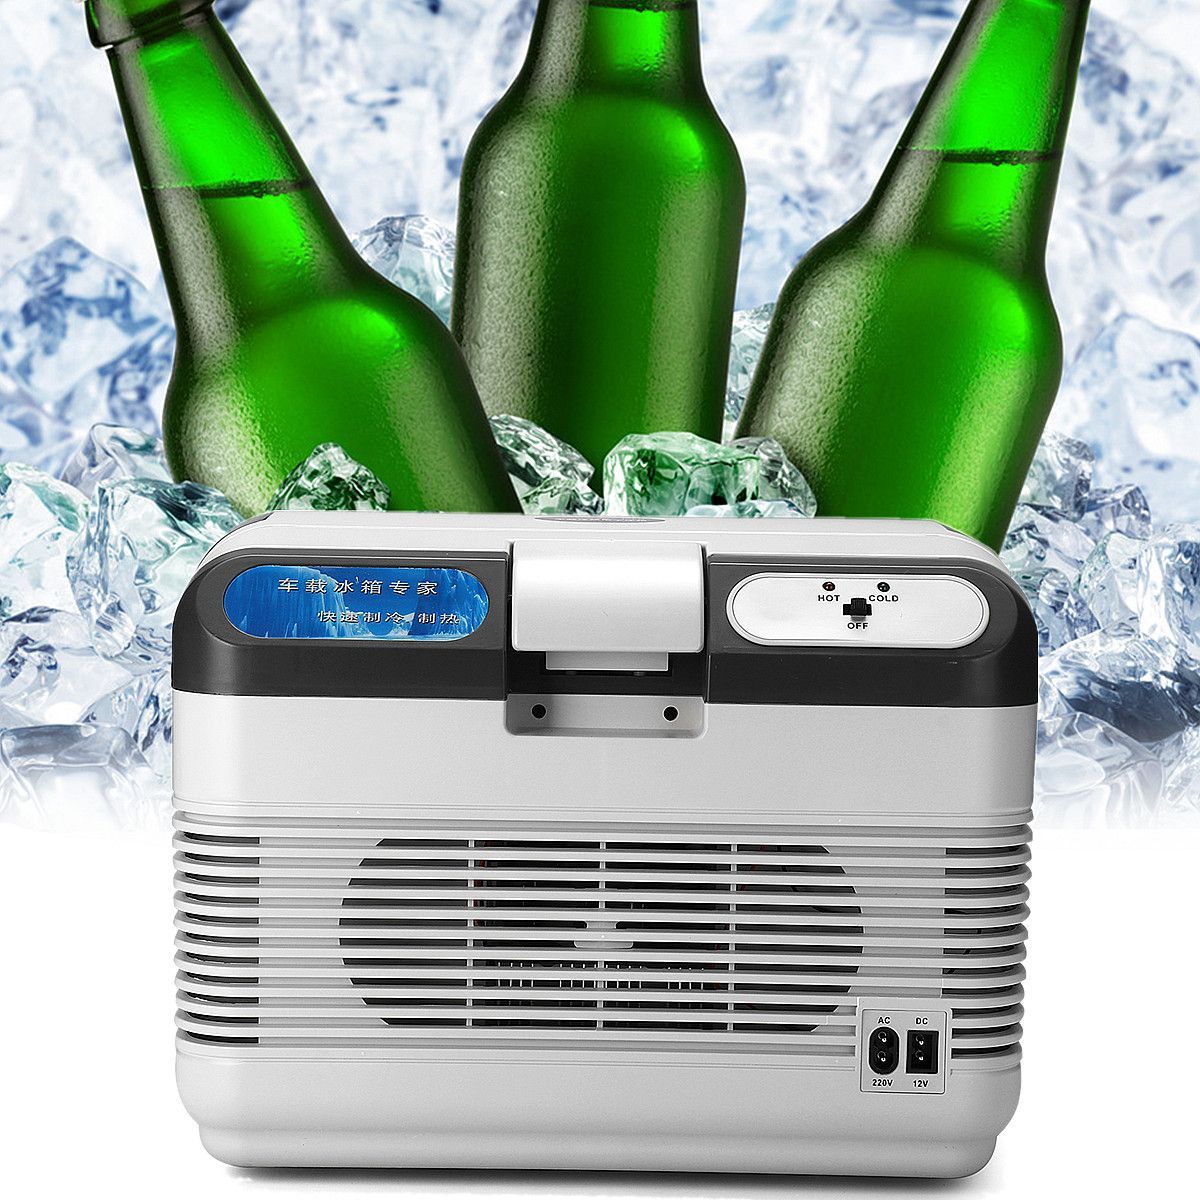 12L-Refrigerator-Dual-Use-Home-Car-Refrigerators-Mini-Freezer-Case-12V-60W-Portable-Ultra-Quiet-Cool-1273755